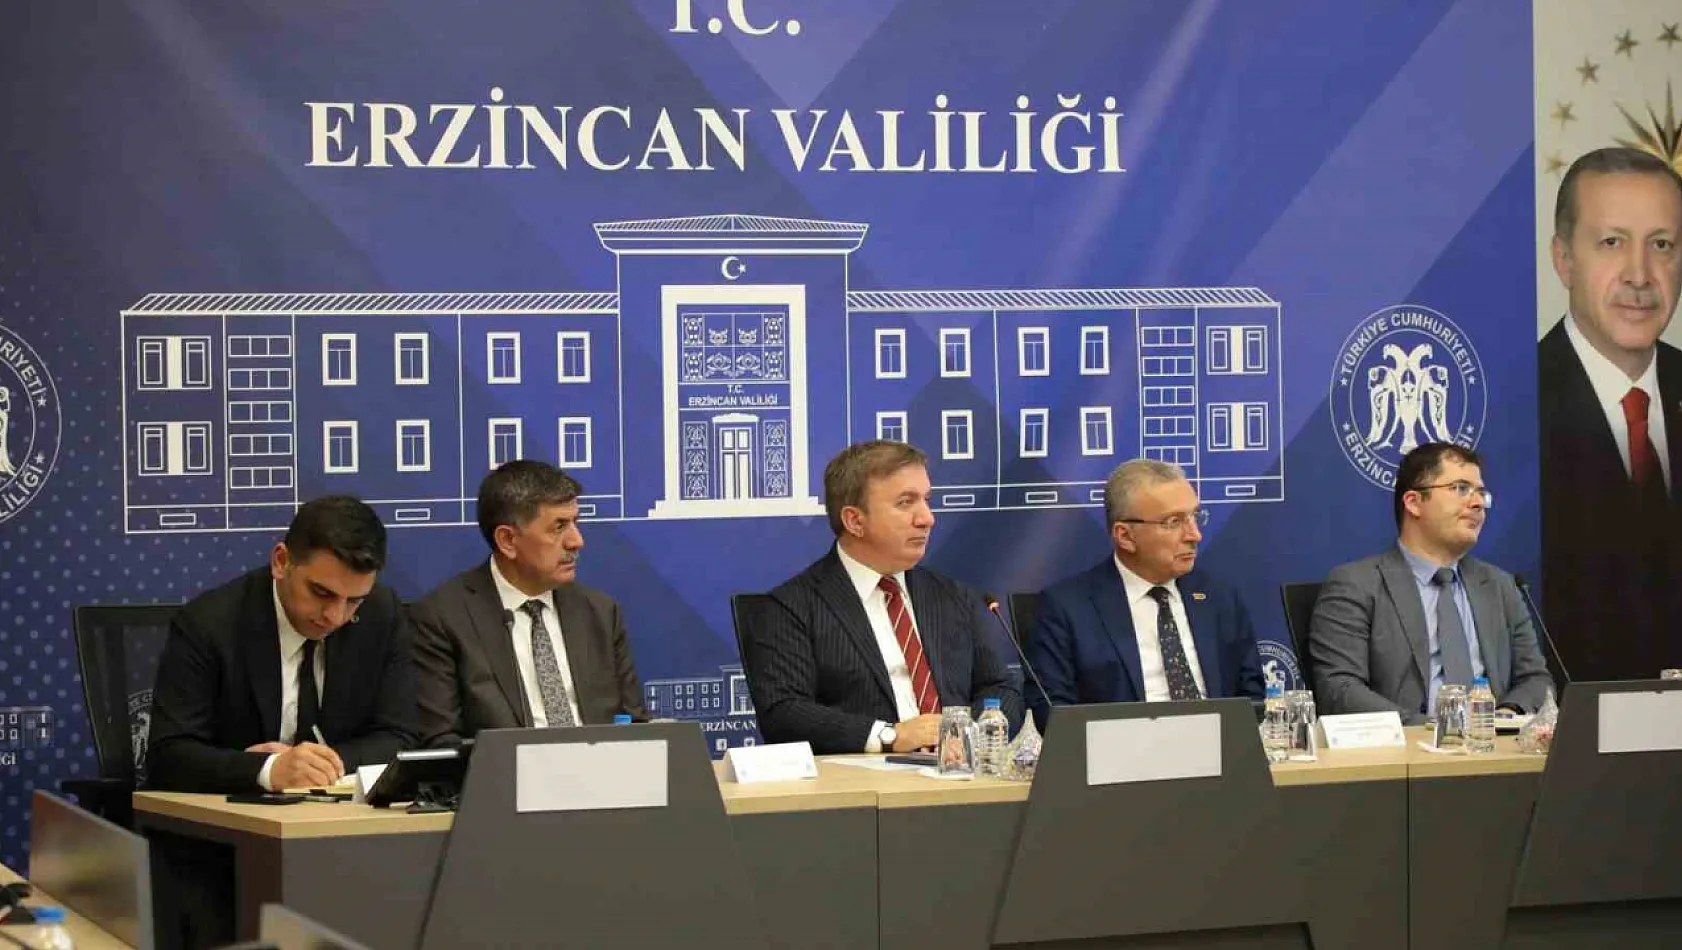 Erzincan'daki yatırımlar değerlendirildi